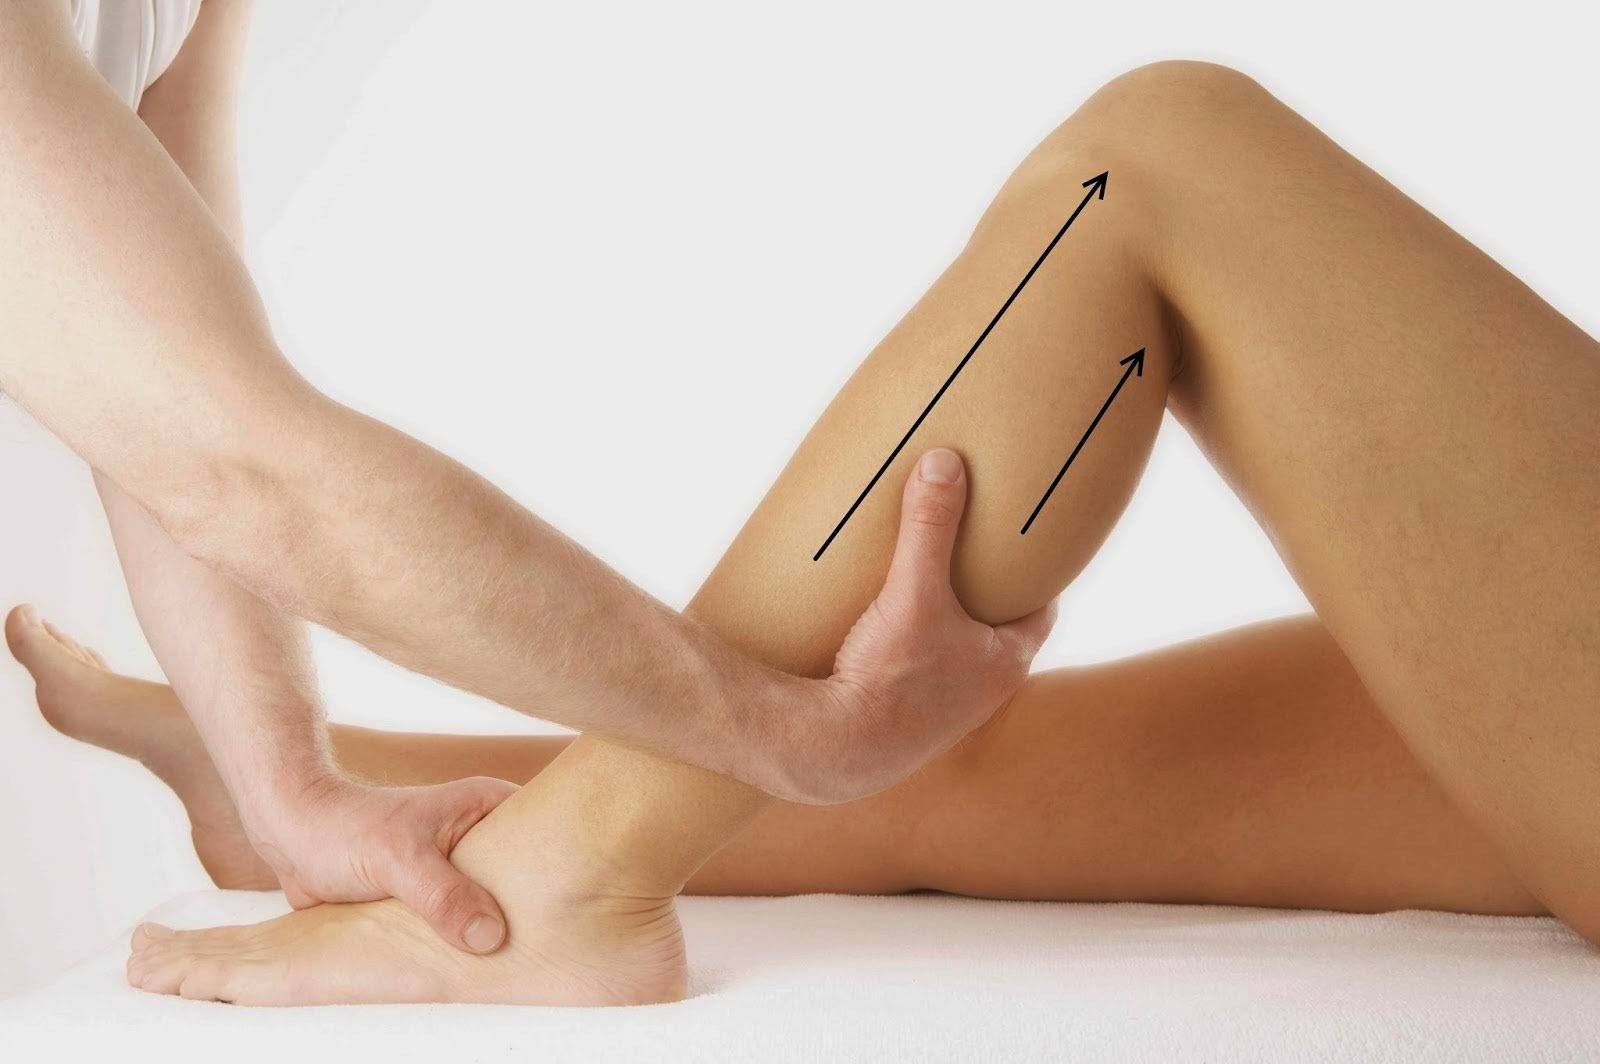 Massage bắp chân đều đặn là một trong những cách giảm mỡ bắp chân nhanh nhất